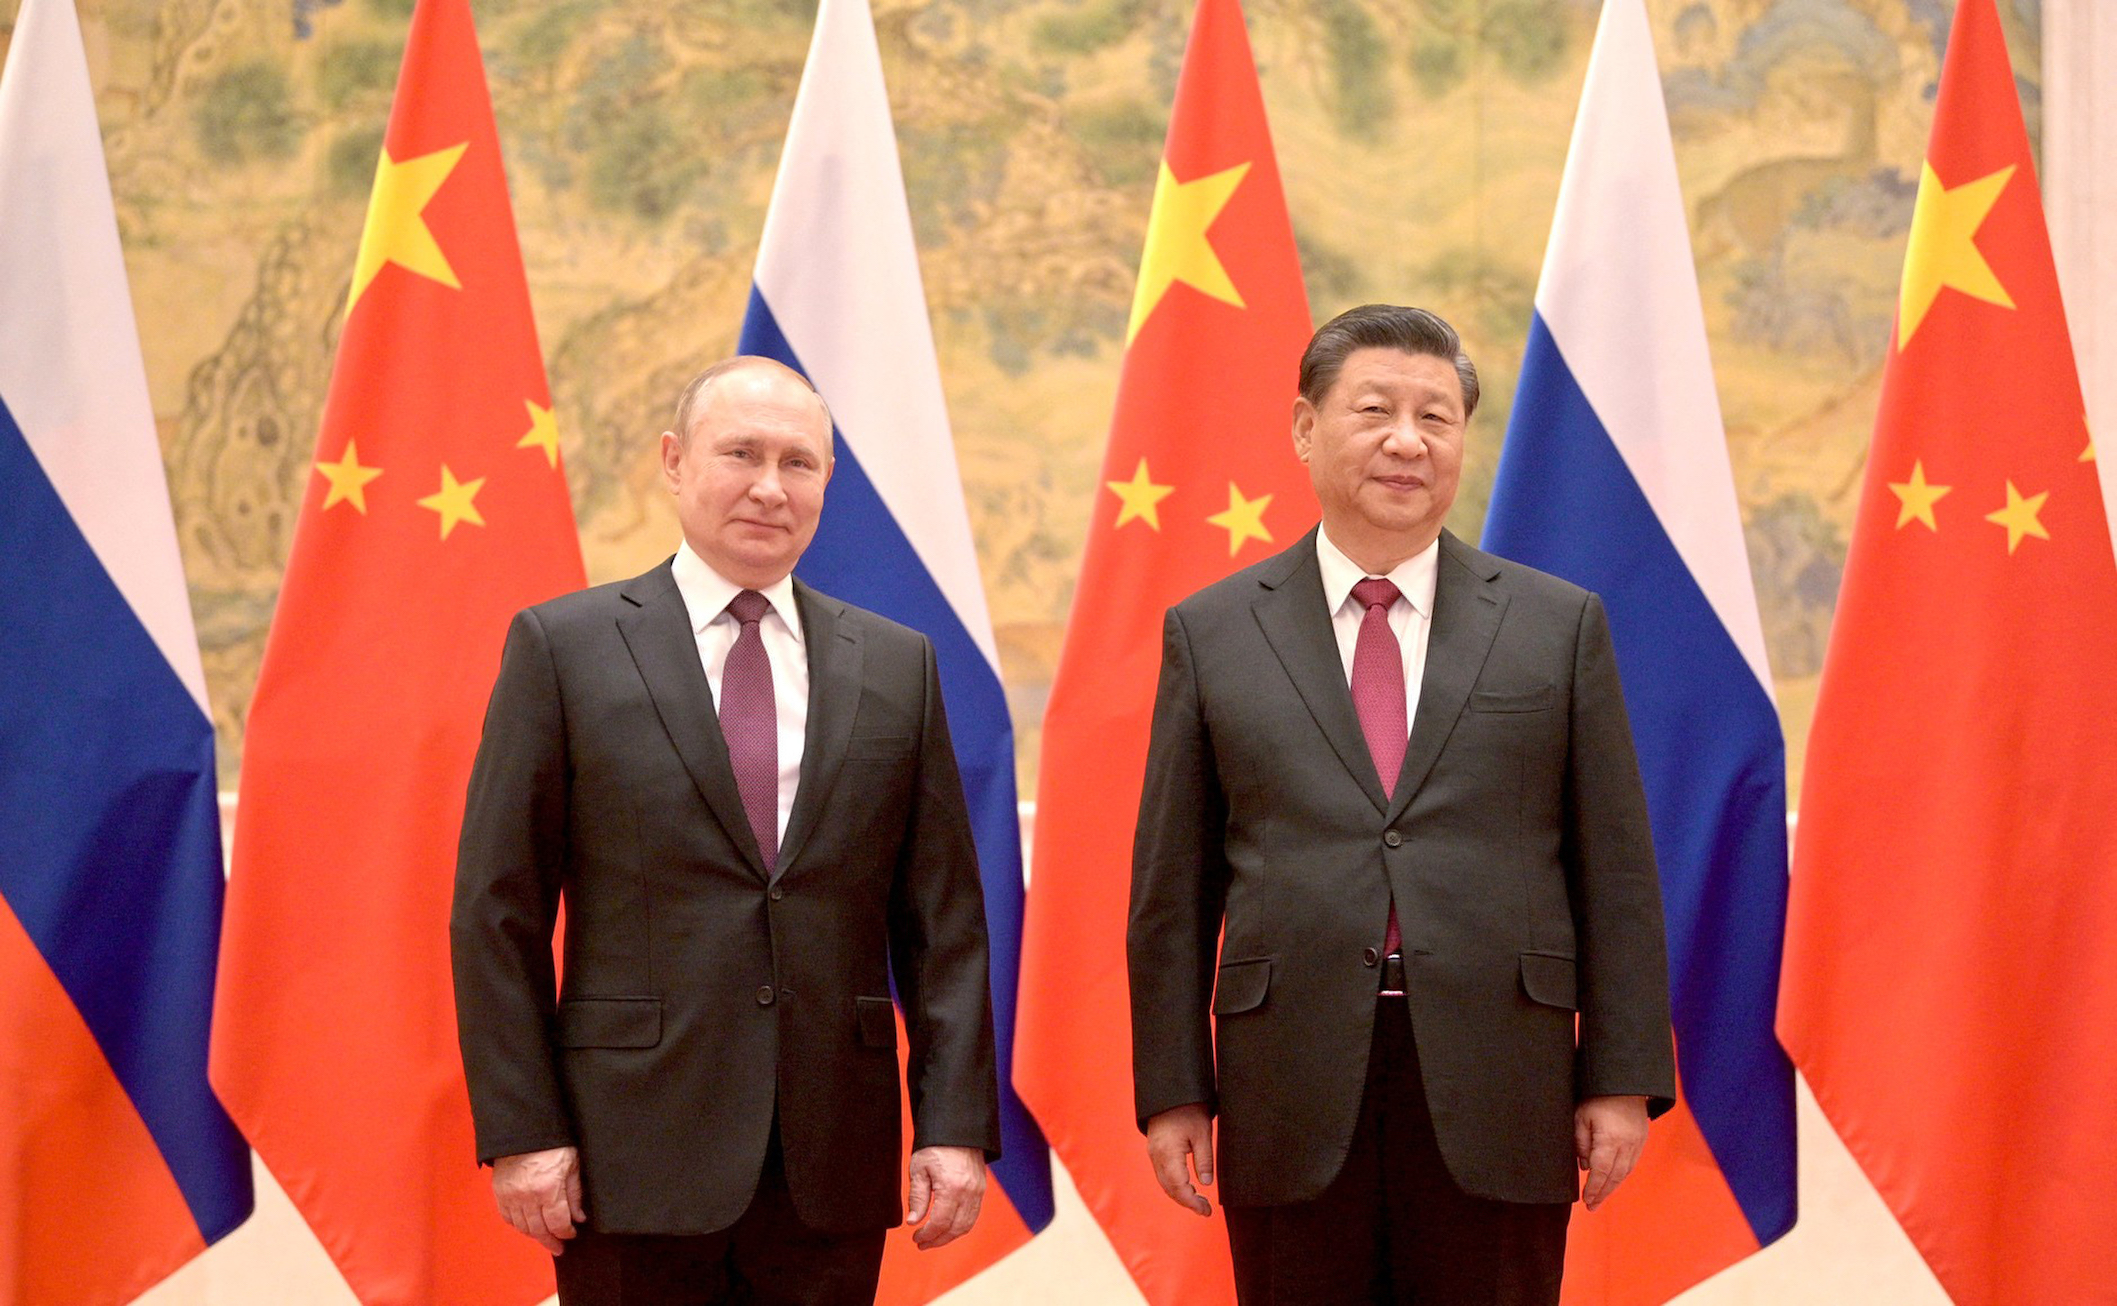 Σι Τζινπίνγκ και Πούτιν διευρύνουν τη συνεργασία τους σε ενέργεια, βιομηχανία και χρηματοοικονομικά